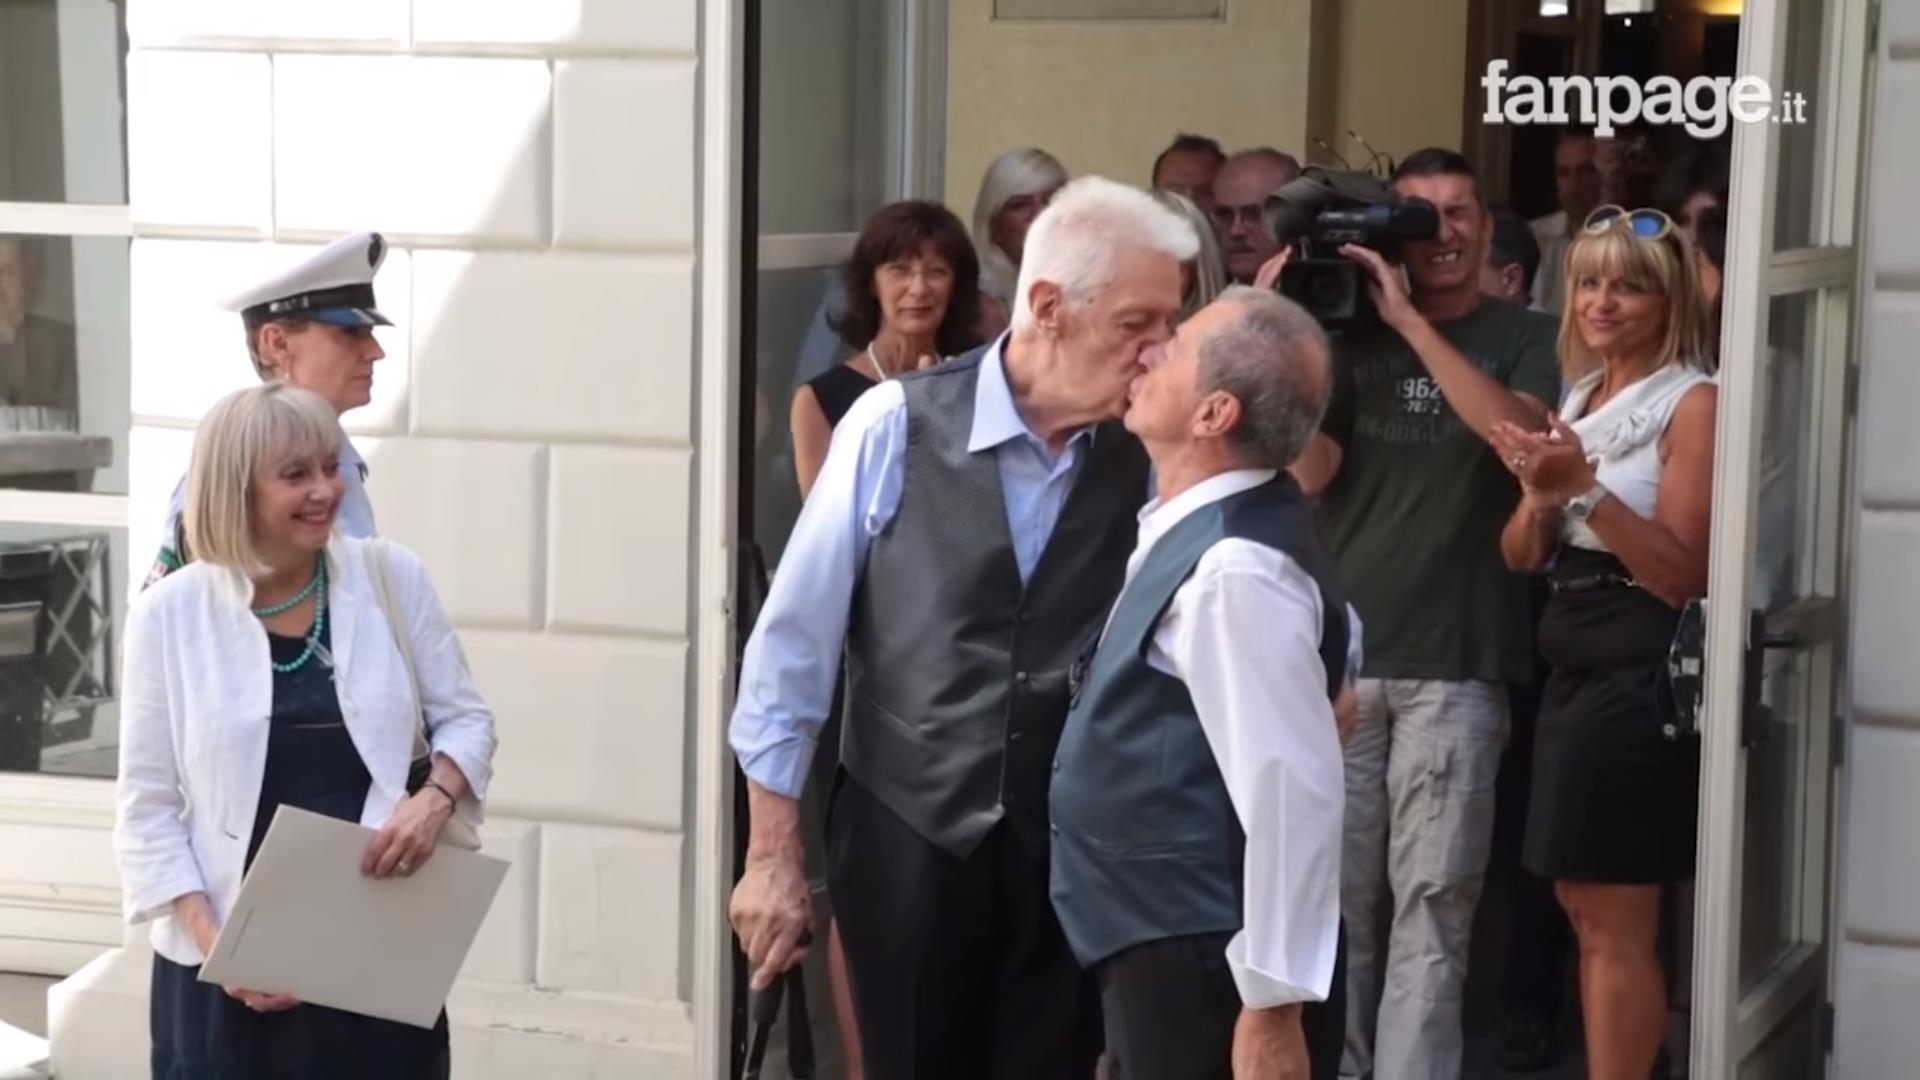 Una pareja gay octogenaria, primera unión civil homosexual en Turín